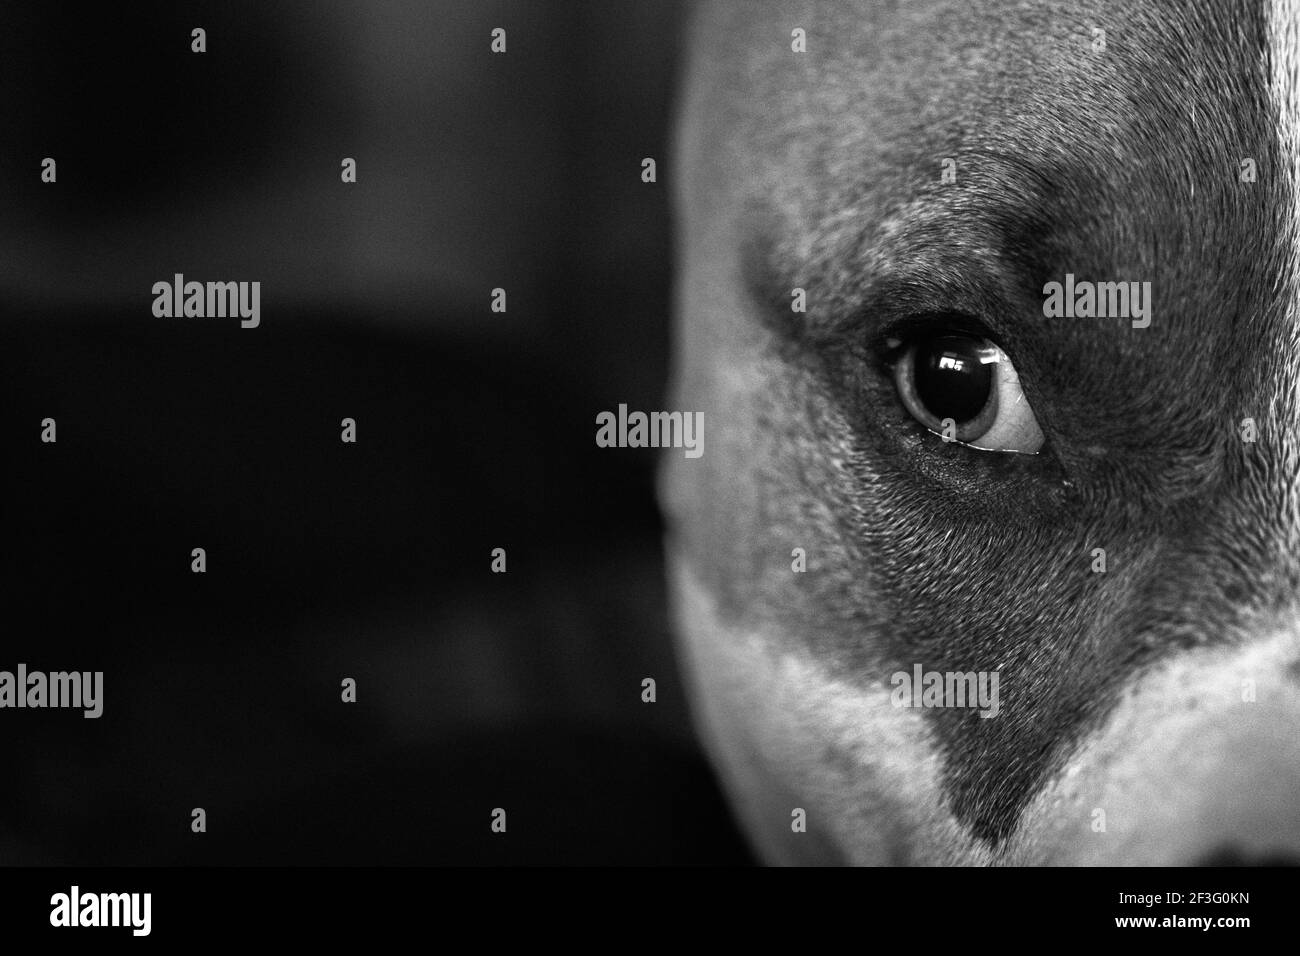 Un chien mixte (American Staffordshire Pit Bull Terrier et American Pit Bull Terrier) (Canis lupus familiaris) regarde par le coin de son œil. Banque D'Images